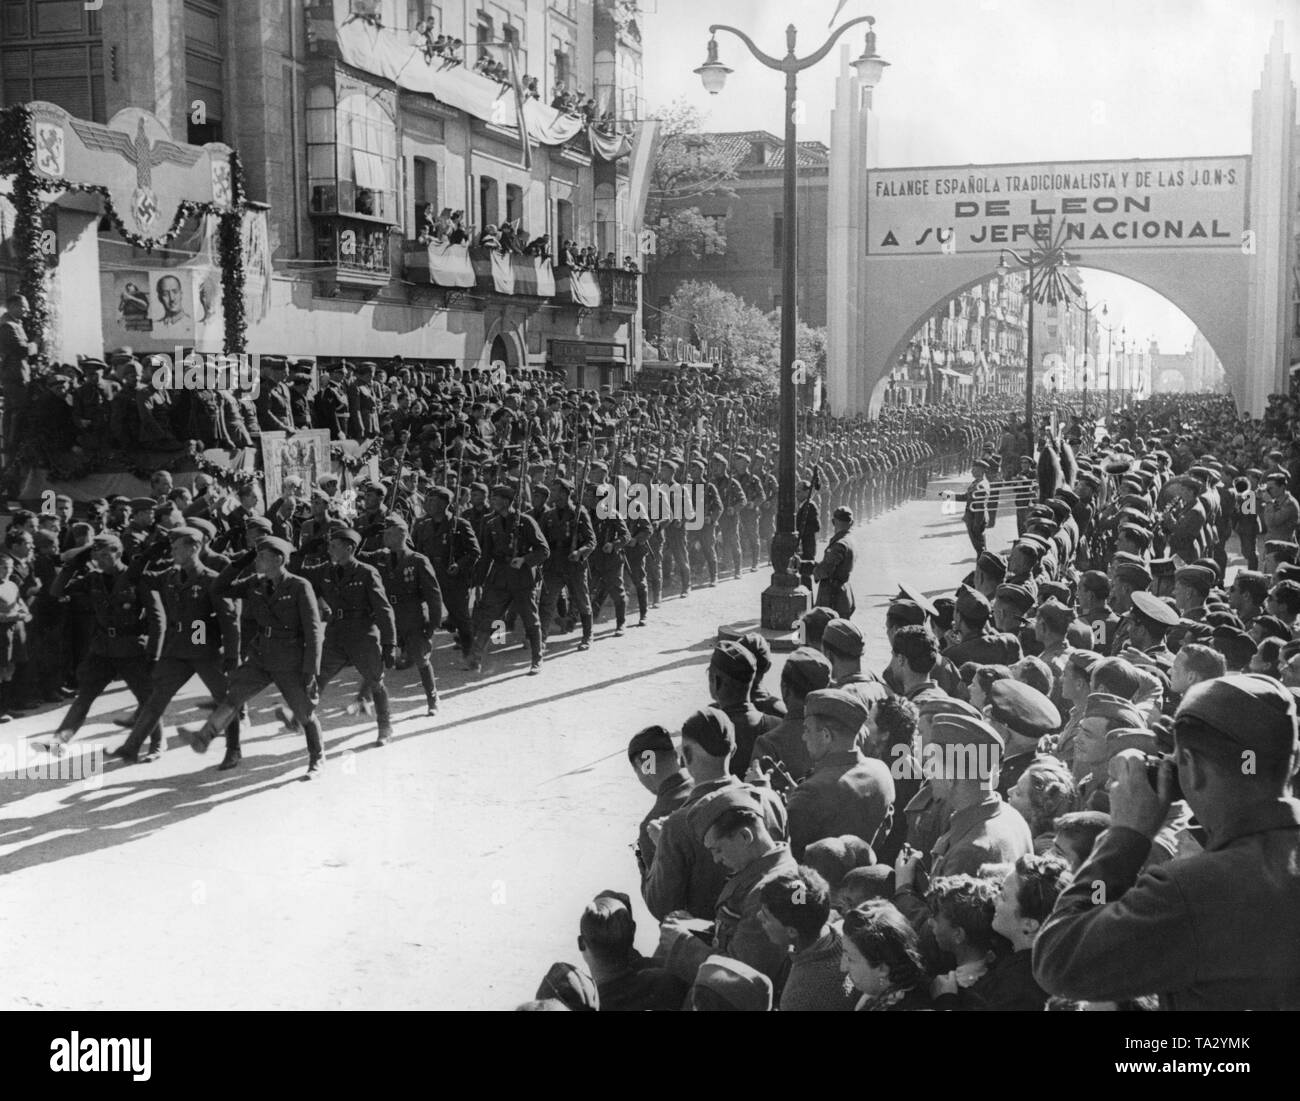 File:Desfile de la Legión española.jpg - Wikimedia Commons